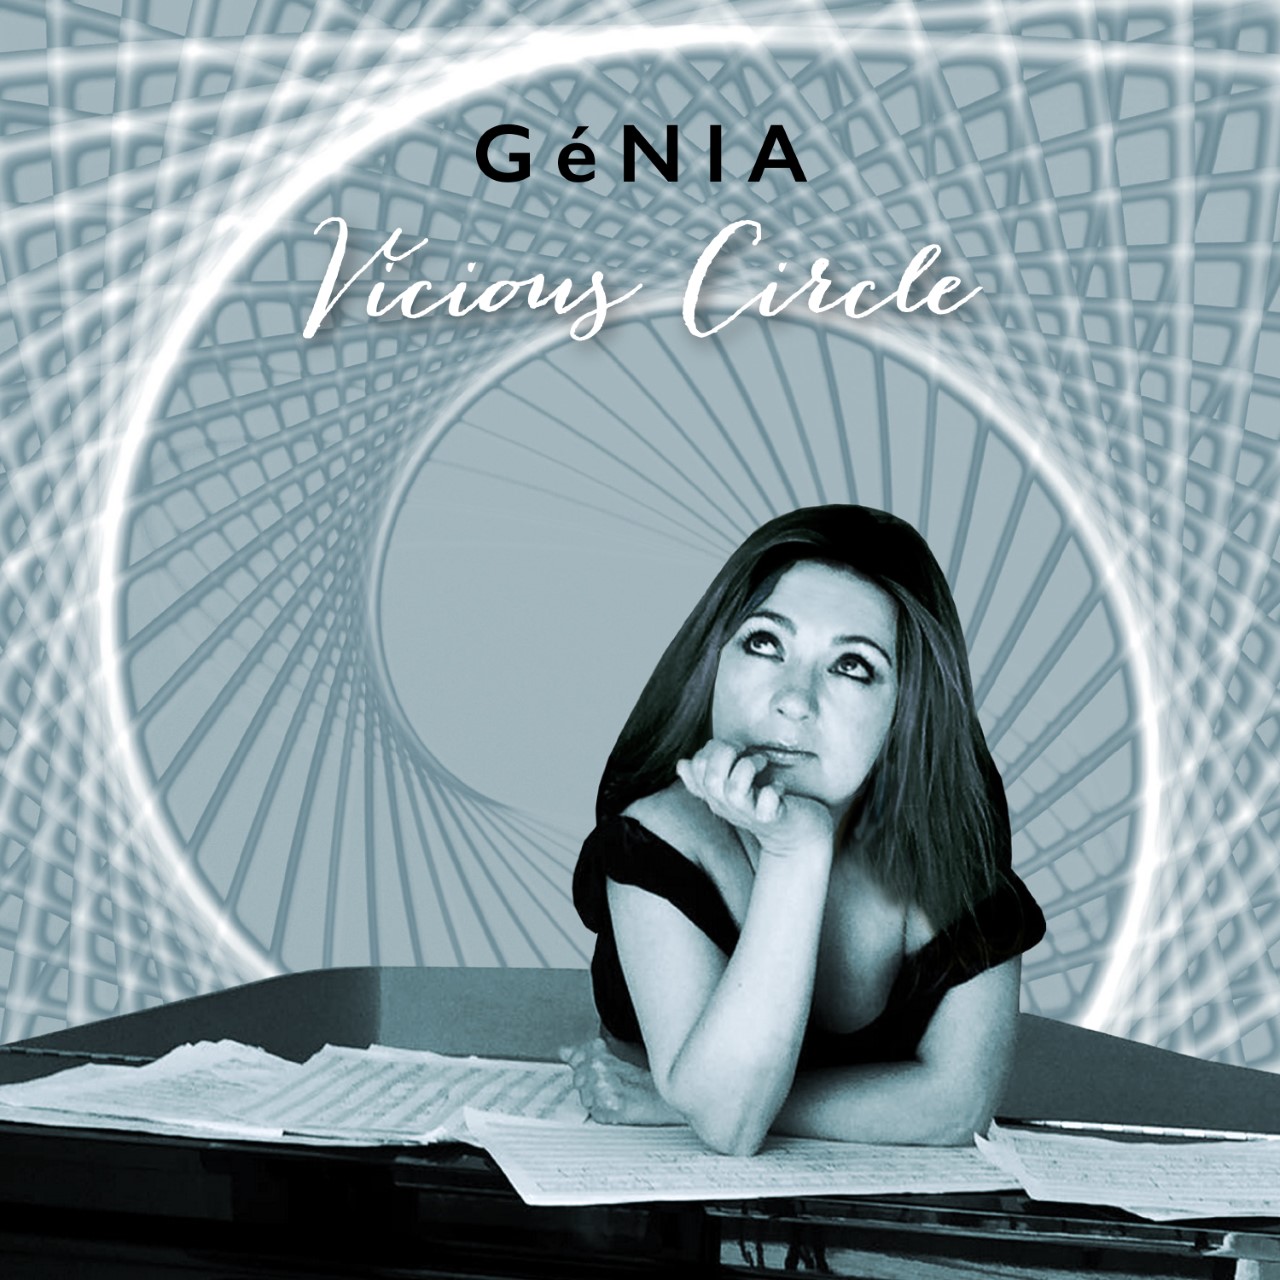 GéNIA To Release 'Vicious Circle' Single